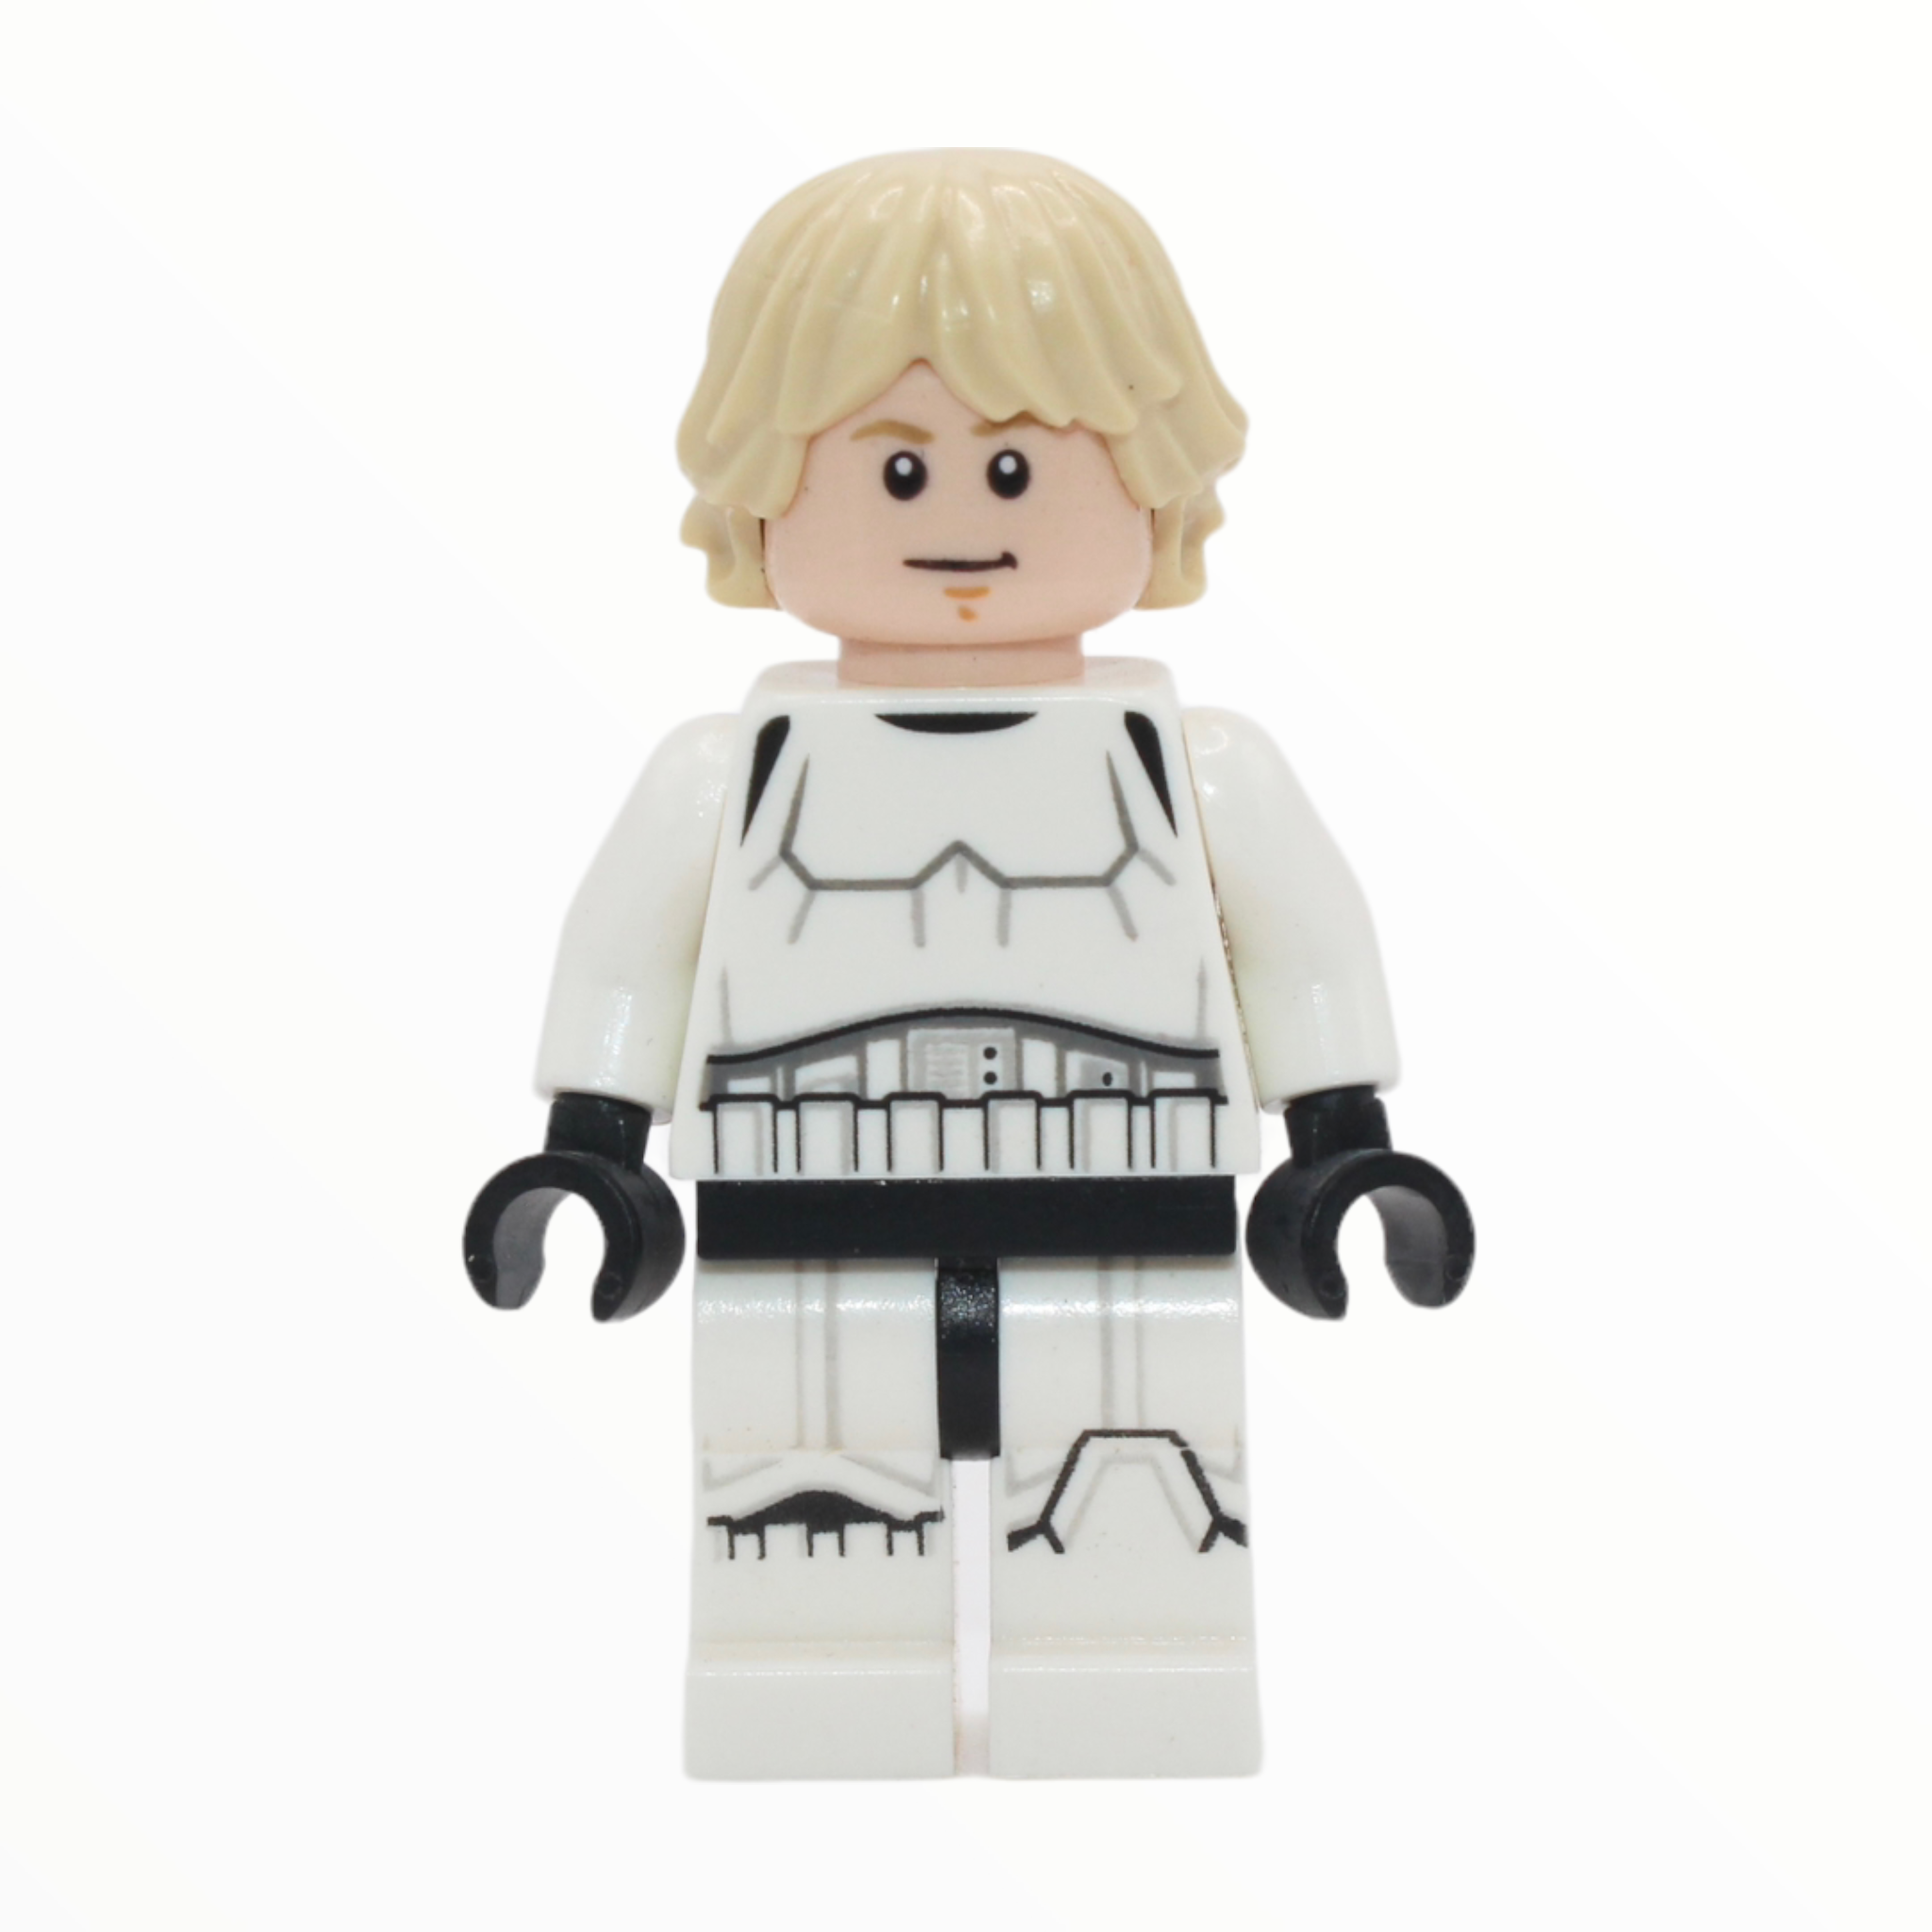 Luke Skywalker (Stormtrooper outfit, tan hair, 2016)